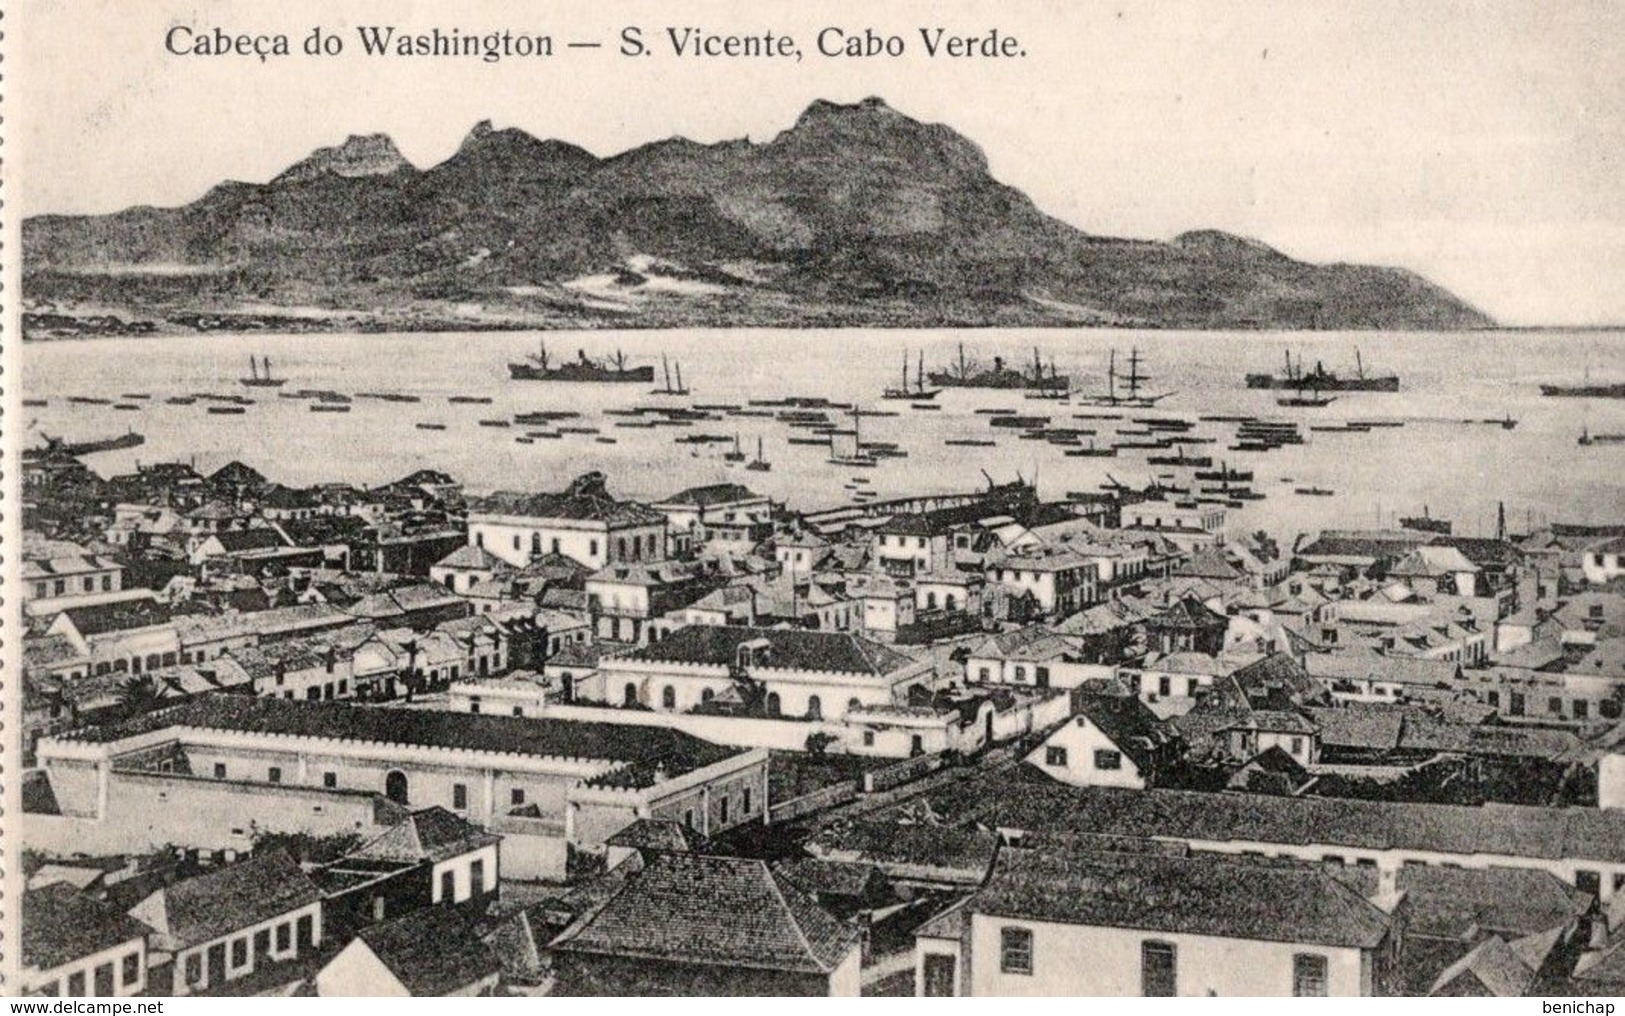 CPA CAP VERT - CABECA DO WASHINGTON - S. VICENTE - CABO VERDE - NEUVE - NON CIRCULEE - Cap Verde